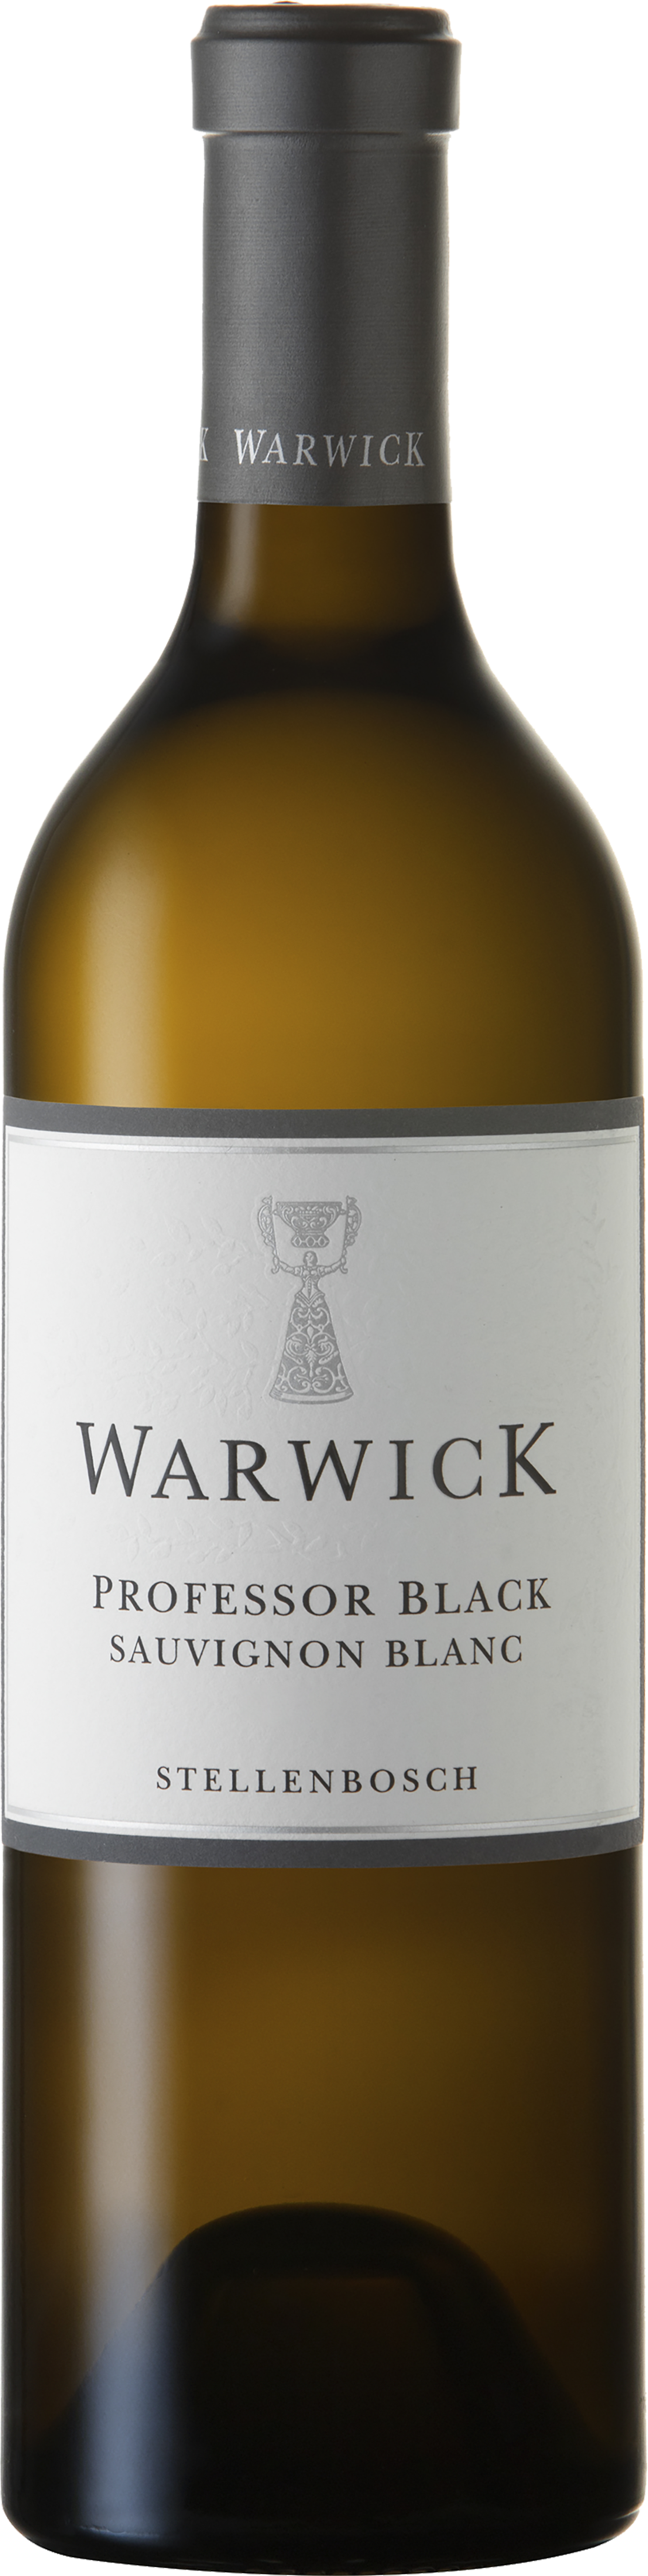 WARWICK PROFESSOR BLACK SAUV BLANC 750ML